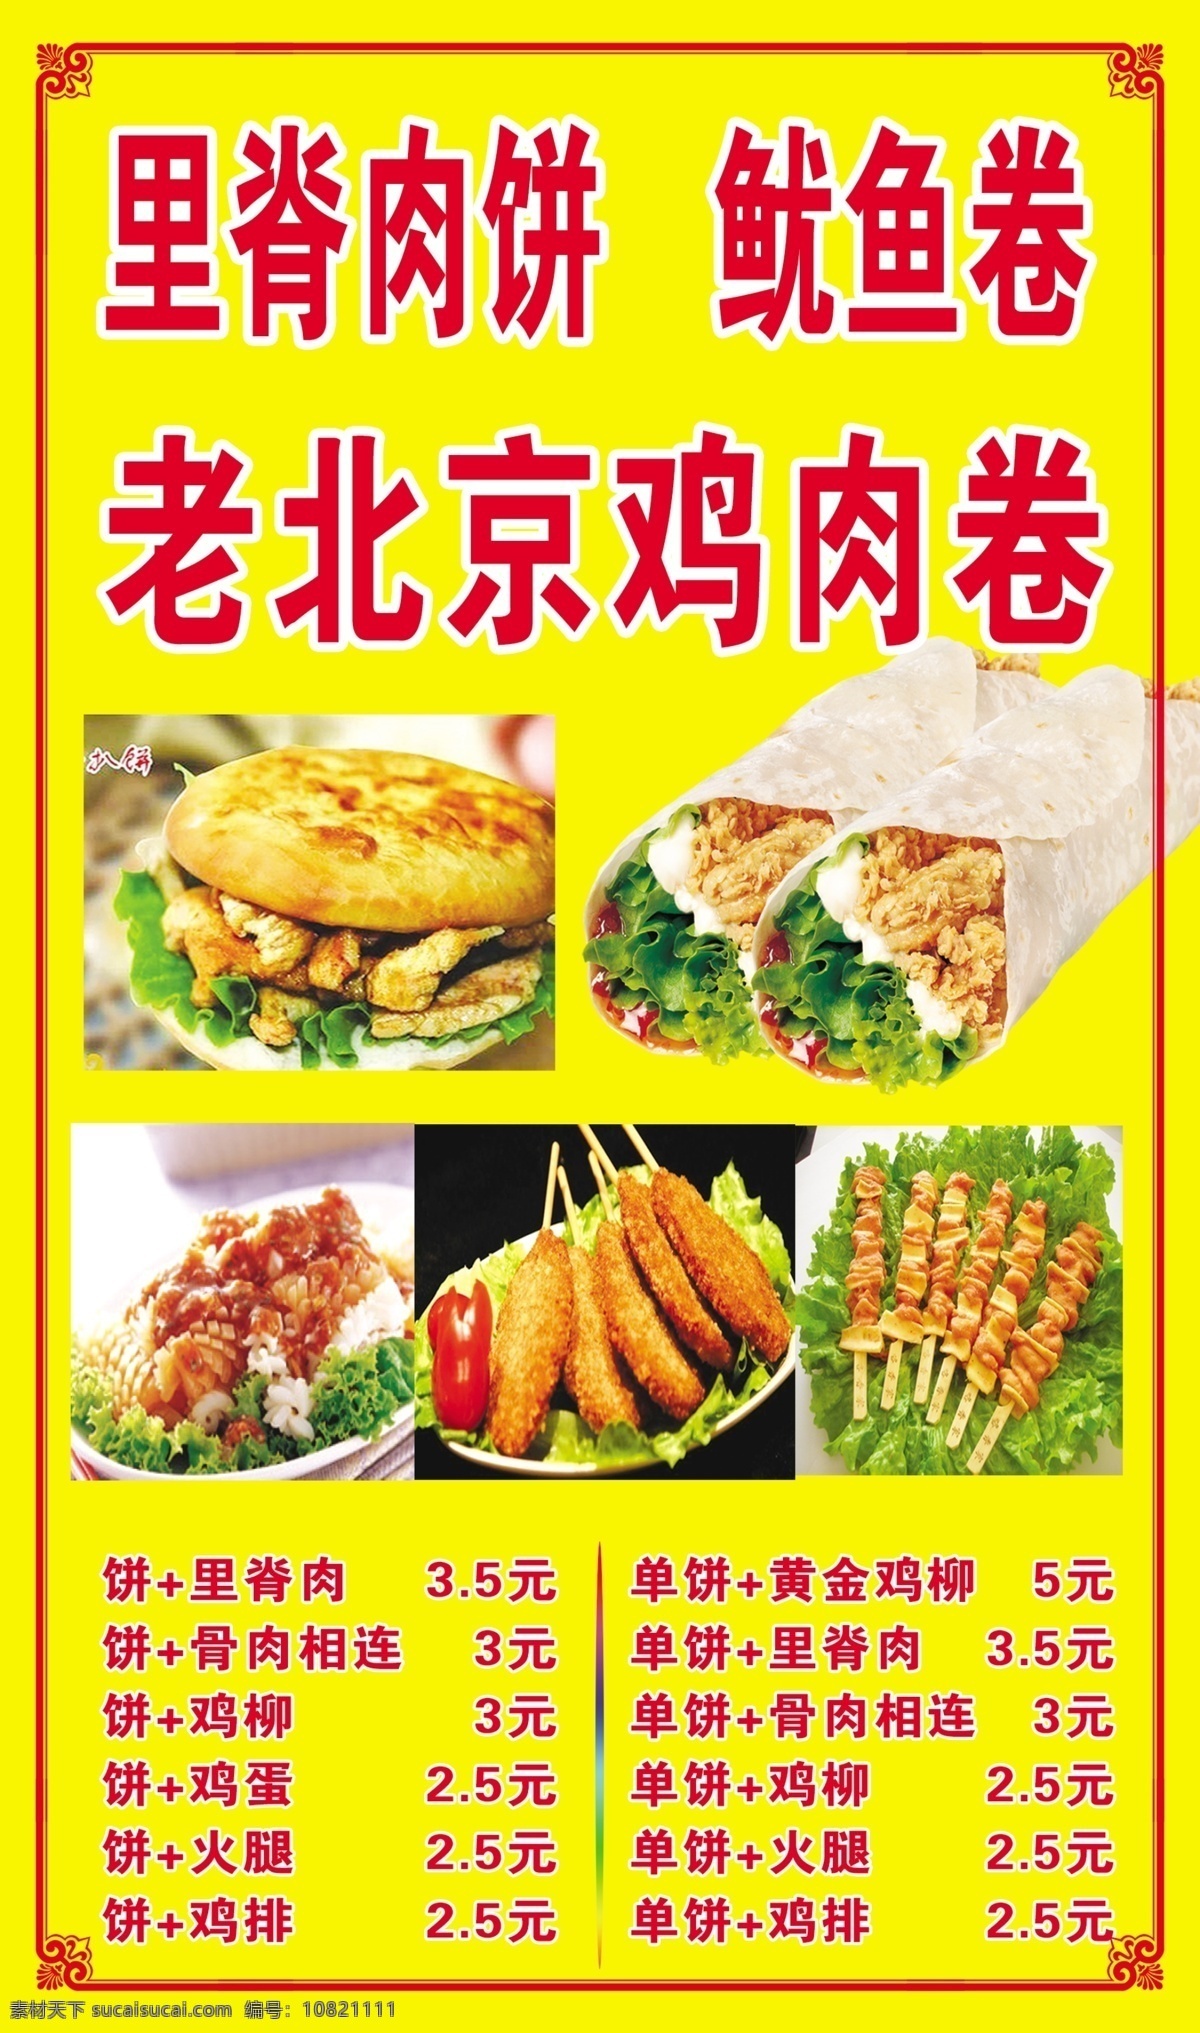 里脊肉饼 鱿鱼卷 老北京鸡肉卷 价格 花边 广告设计模板 源文件